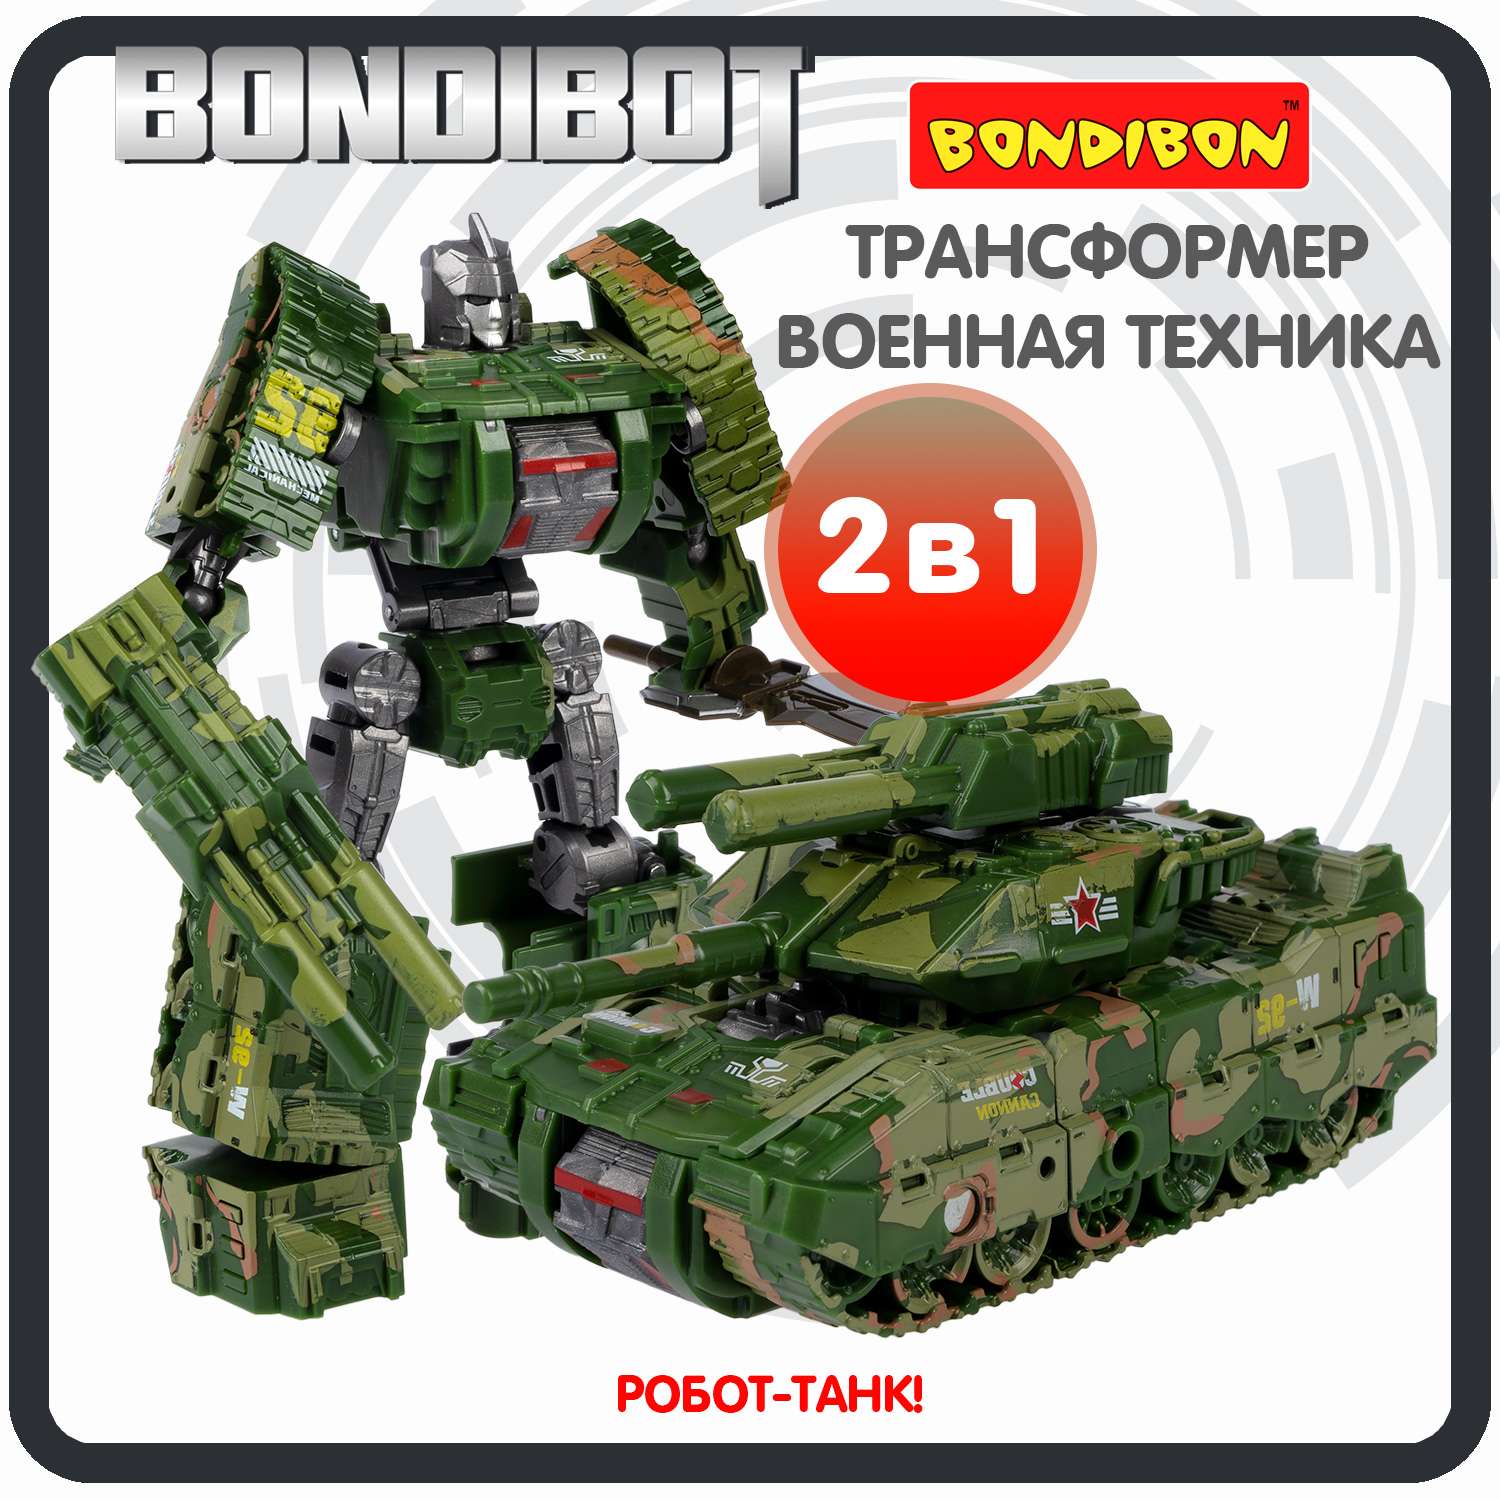 Трансформер BONDIBON BONDIBOT 2 в 1 робот - танк Leopard цвет зеленый хаки - фото 1